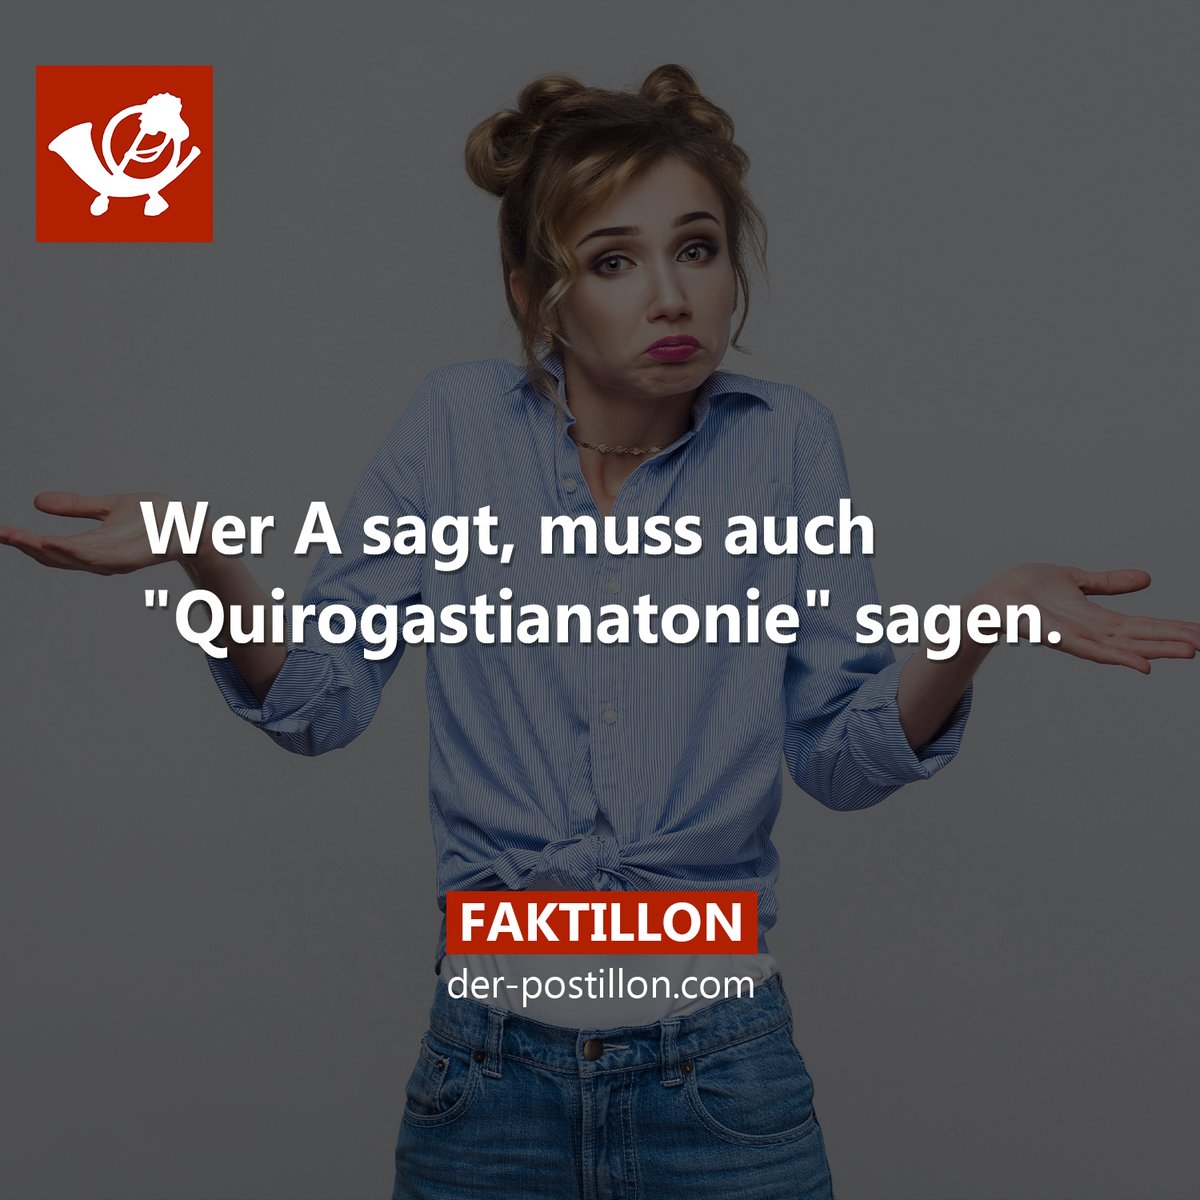 Die besten Fakten als Buch 👉 shopillon.de/faktillon/ Ehrliche Nachrichten auf 👉 der-postillon.com